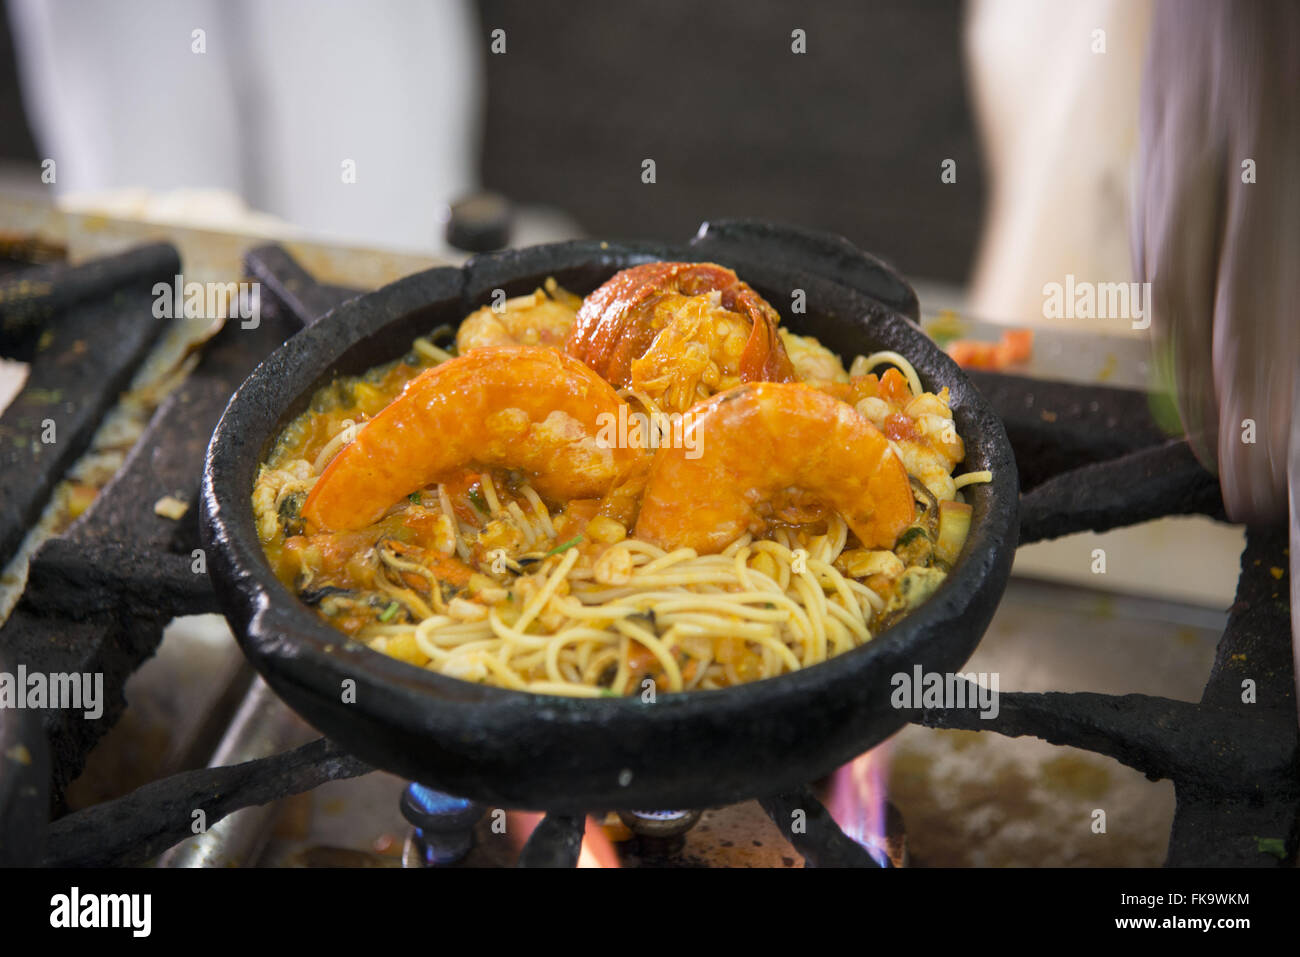 Spaghetti aux fruits de mer - crevettes et homard Banque D'Images